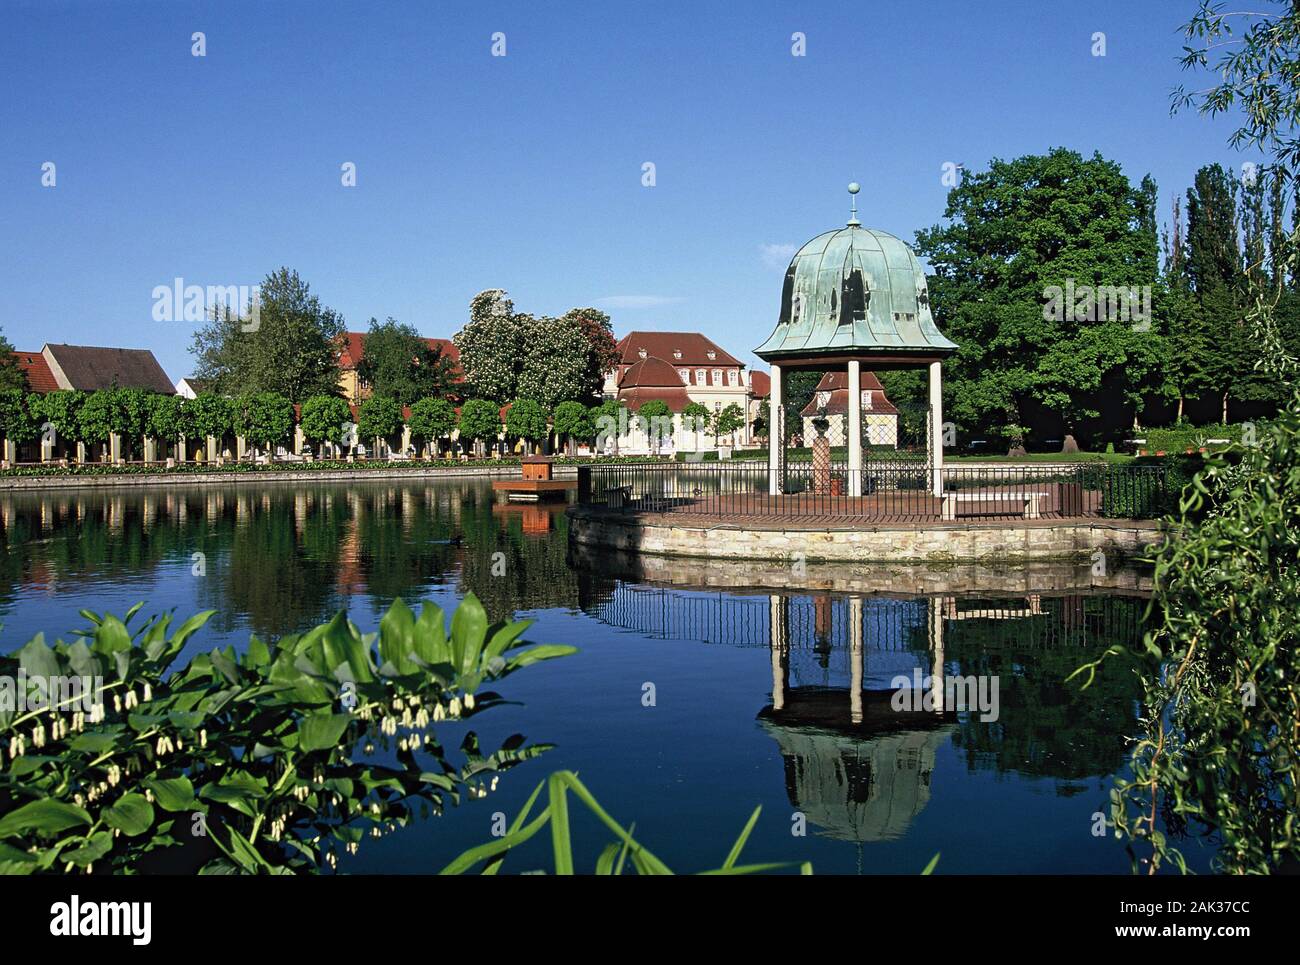 Un alcova storica riflette nelle acque del lago a Bad Lauchstaedt. Il centro termale di Bad Lauchstaedt si trova nello stato federale della Sassonia-Anhalt in Foto Stock